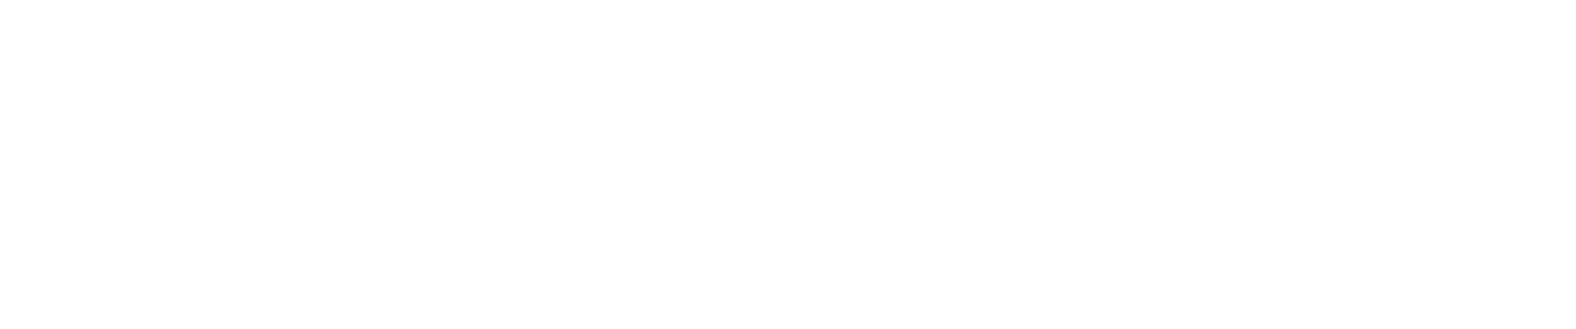 Kerry Group logo grand pour les fonds sombres (PNG transparent)